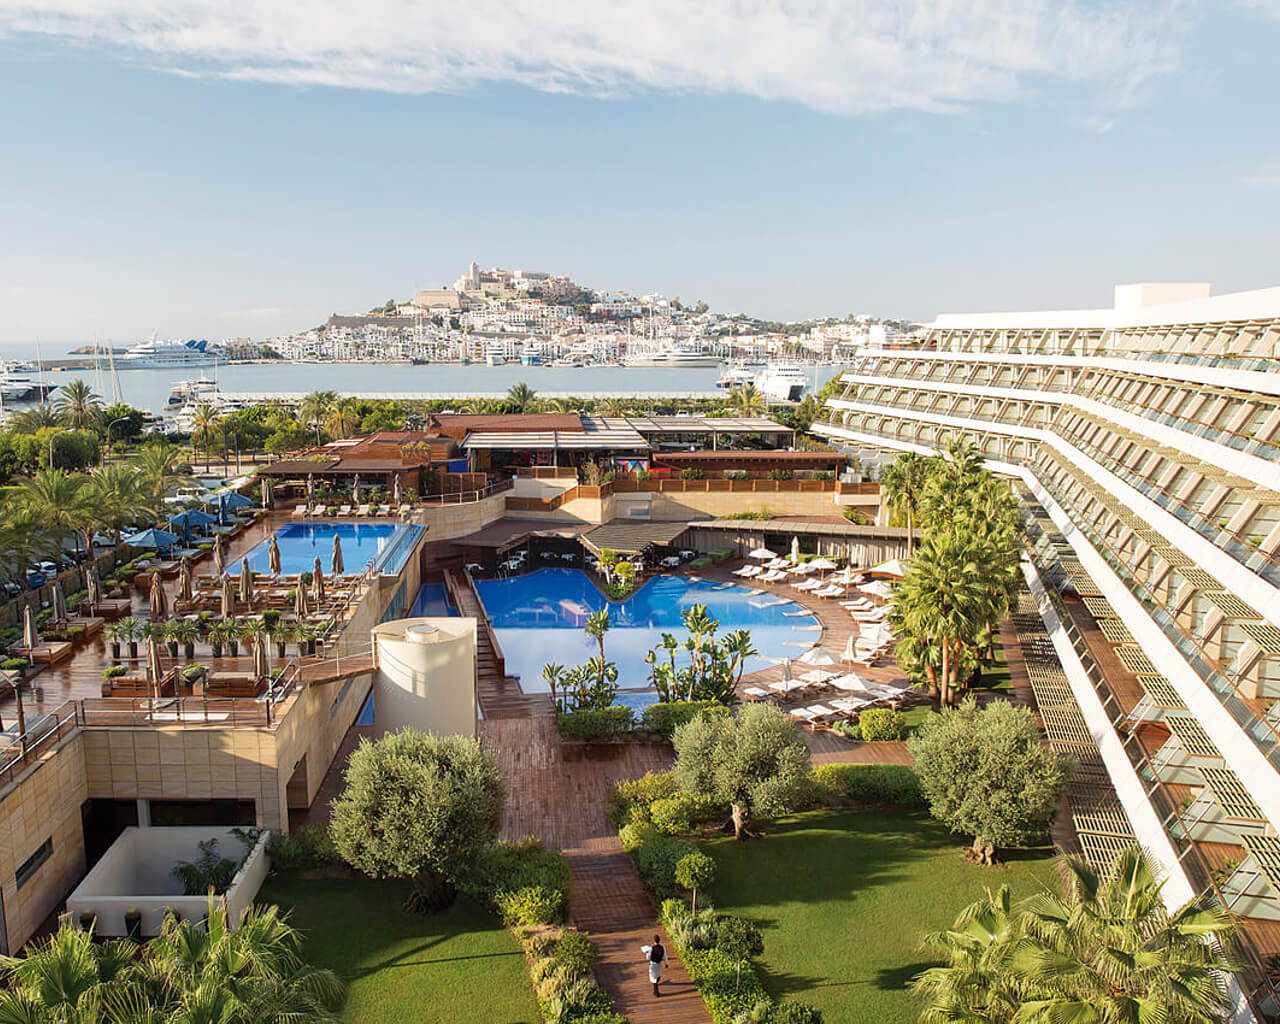 Séjour à Ibiza ville, Ibiza Grand hôtel, aux Baléares